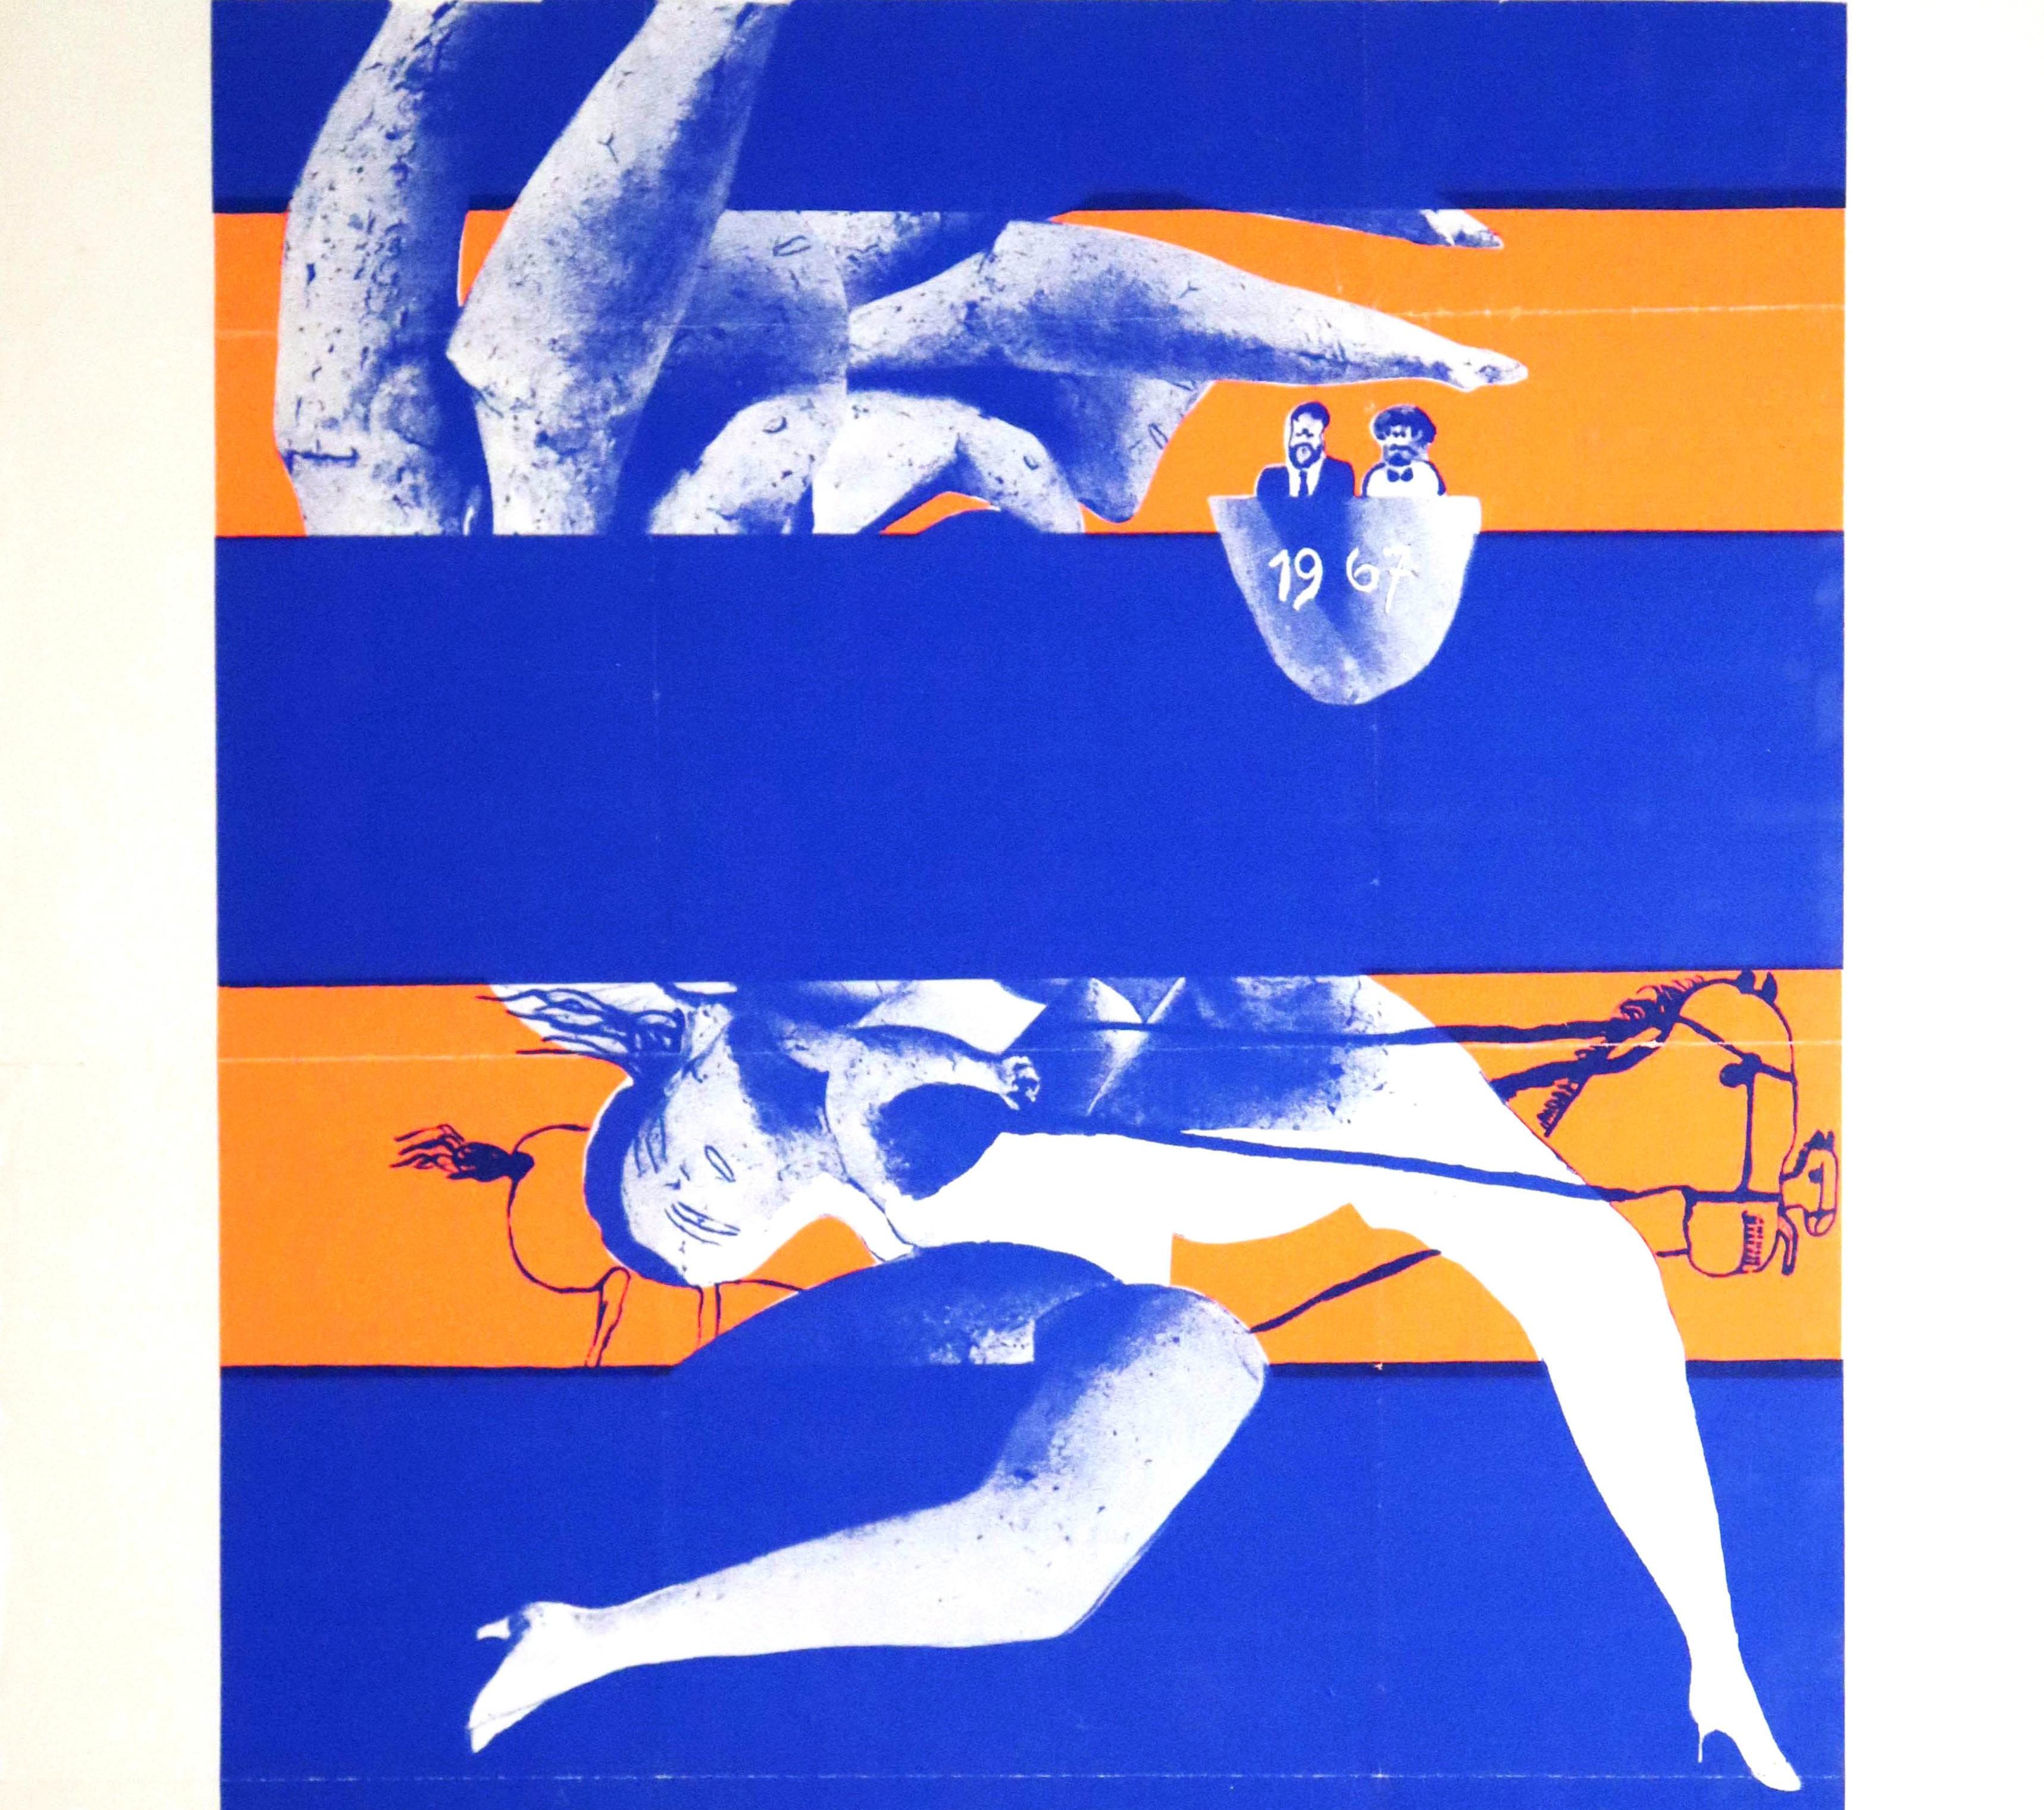 Original Vintage Poster Bilder + Plastiken Art Exhibition Pictures + Sculptures - Surrealist Print by Lothar Fischer Heimrad Prem